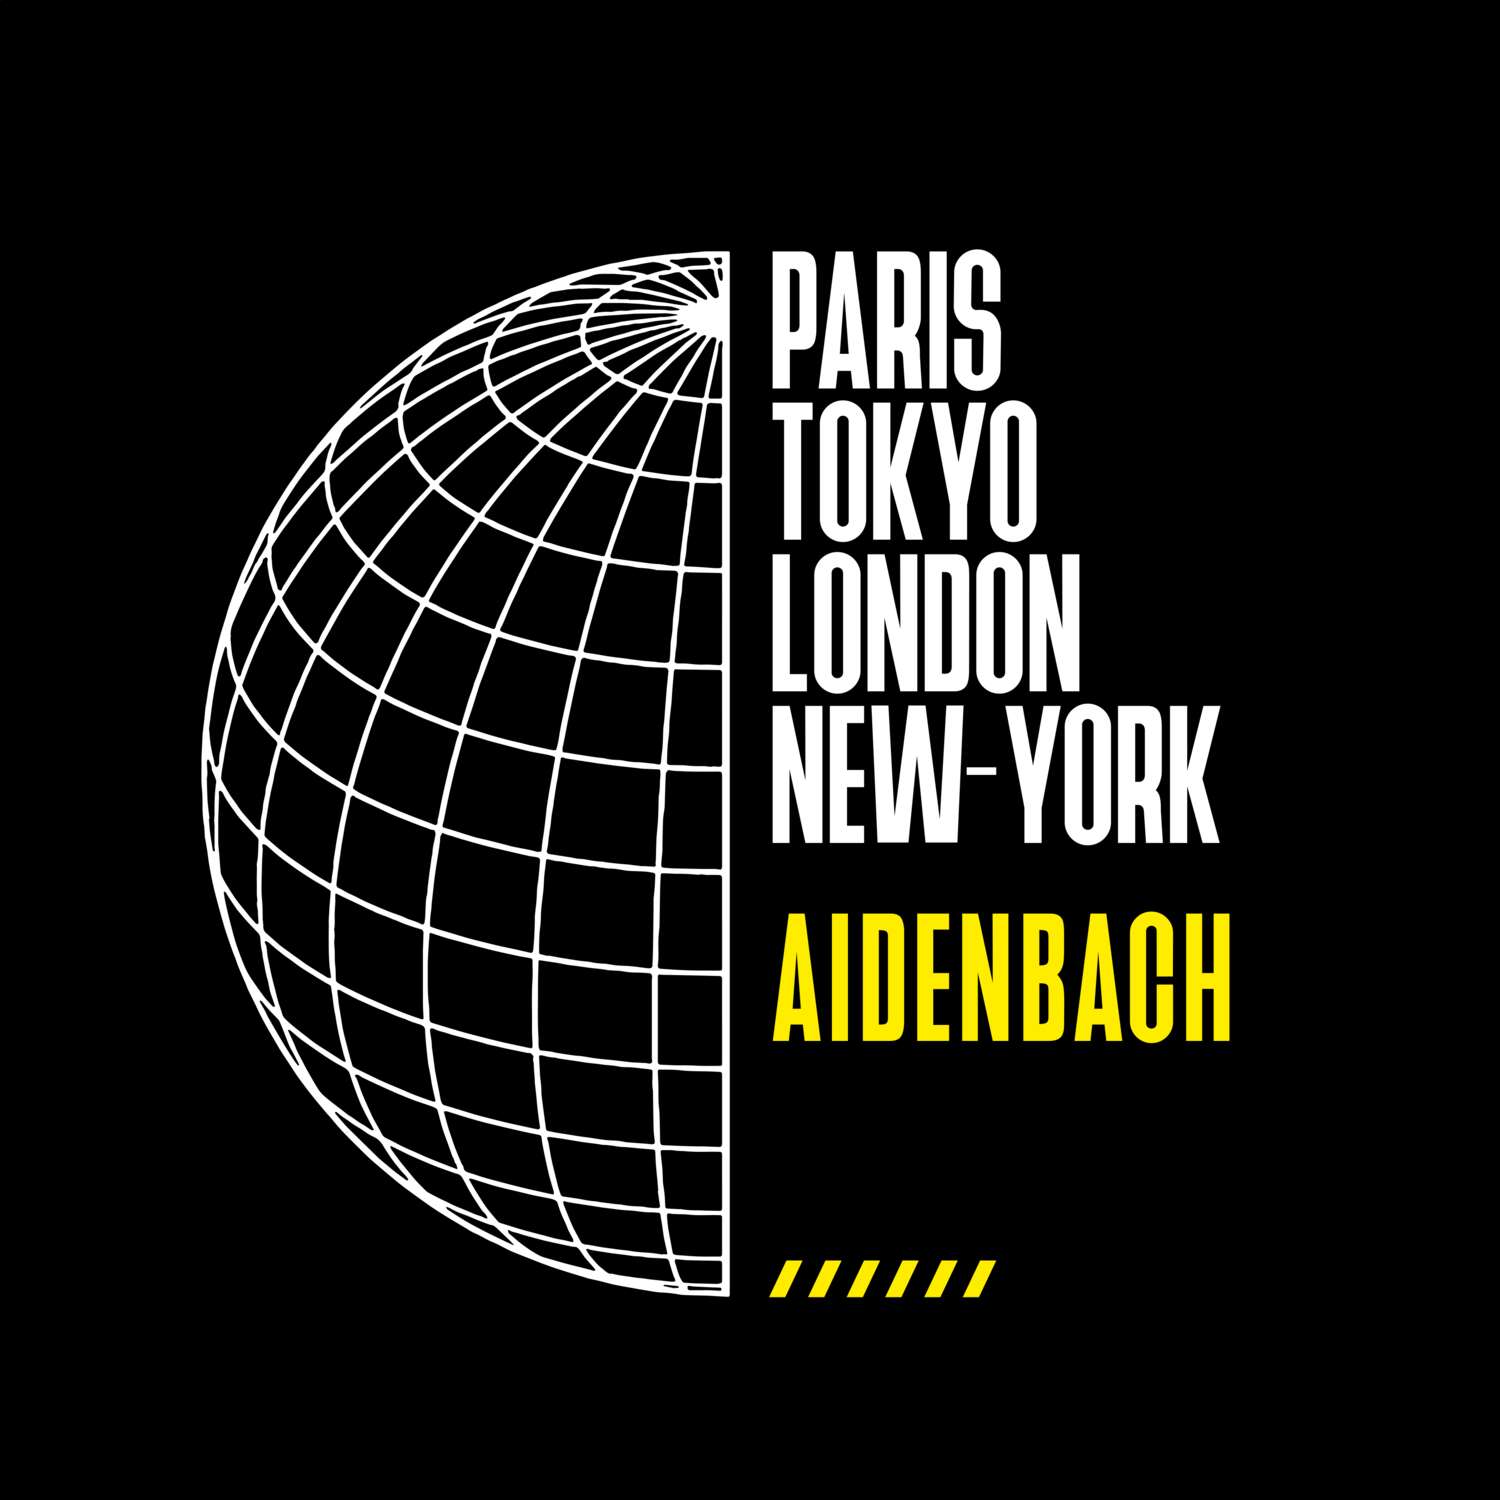 Aidenbach T-Shirt »Paris Tokyo London«